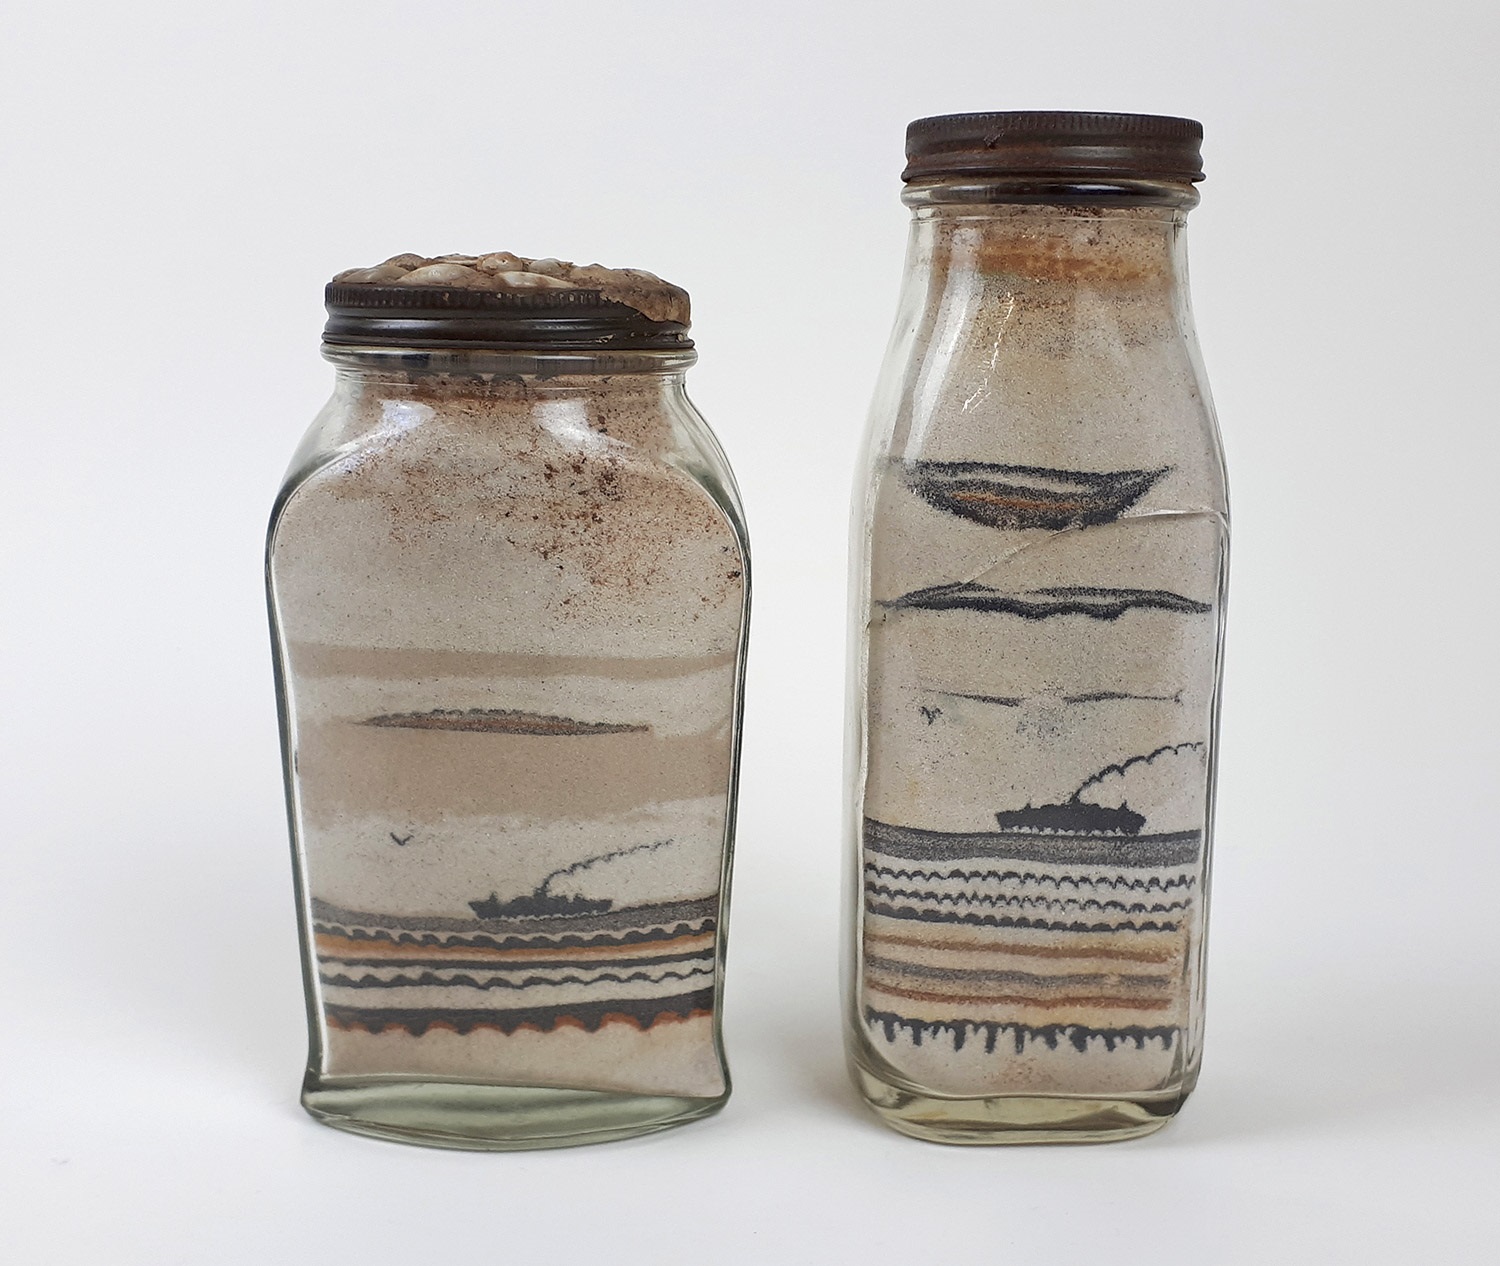 Sand art bottles